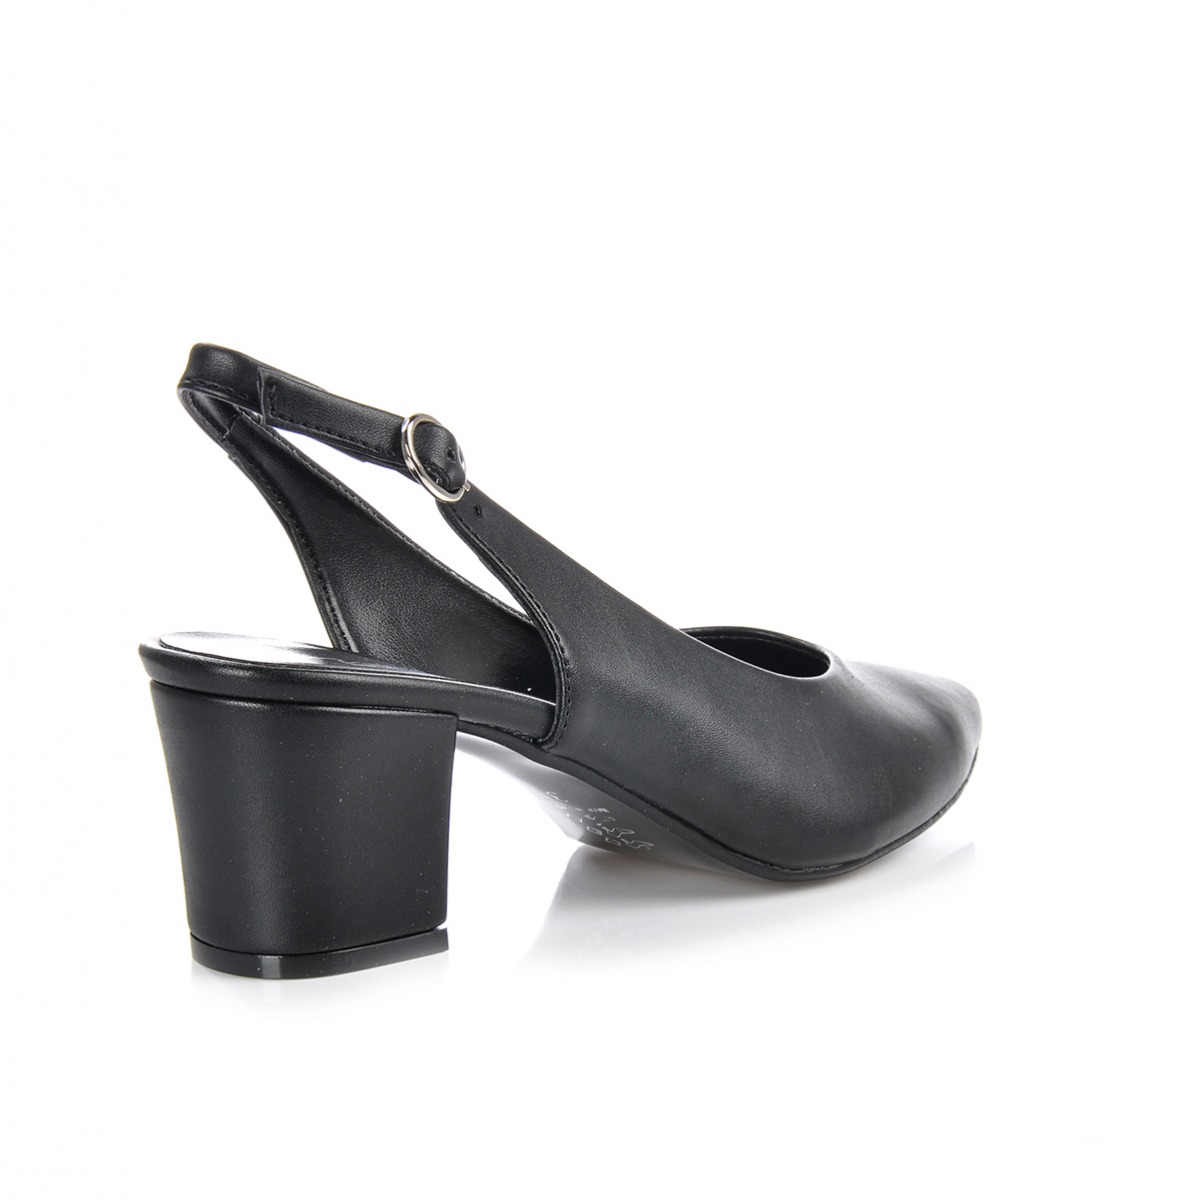 Flo Kadın  Siyah Klasik Topuklu Ayakkabı VZN-233Y. 3